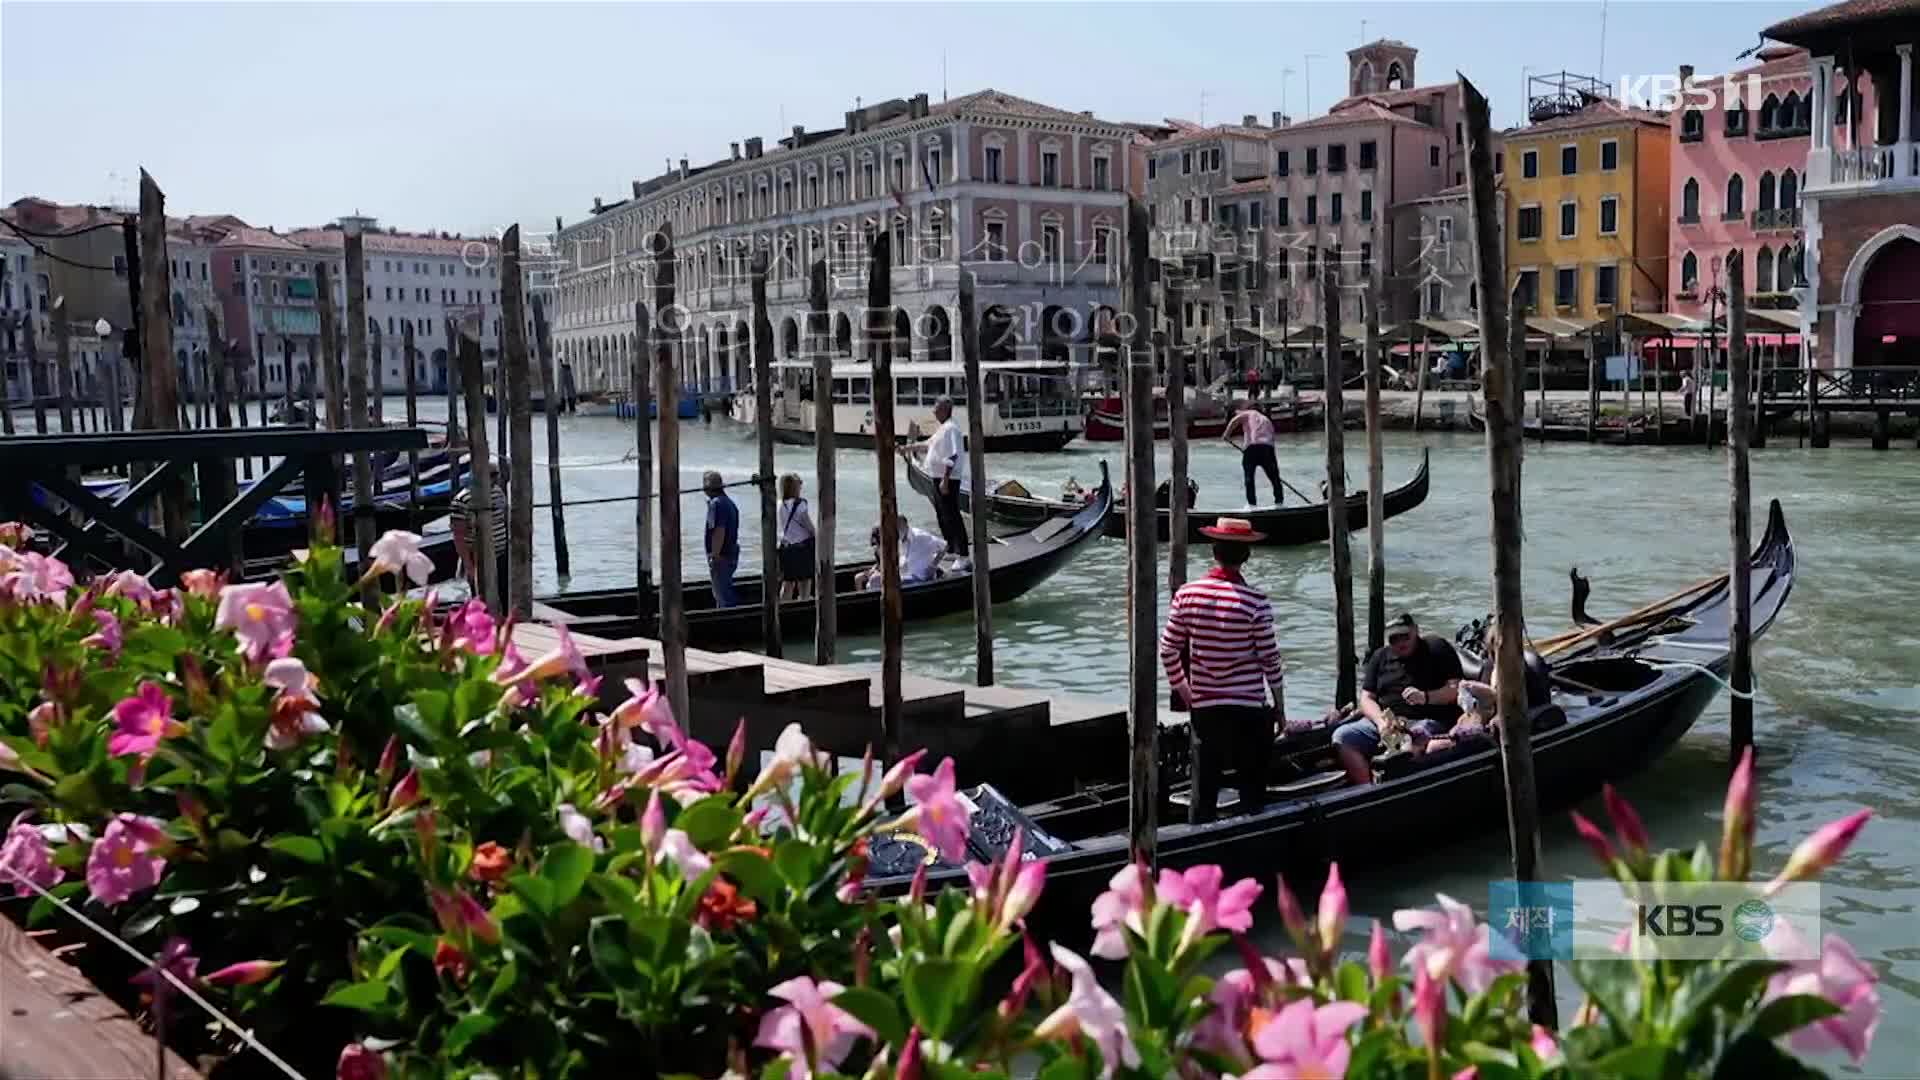 [사진으로 보는 세계] 관광도시 베네치아의 이유 있는 반대